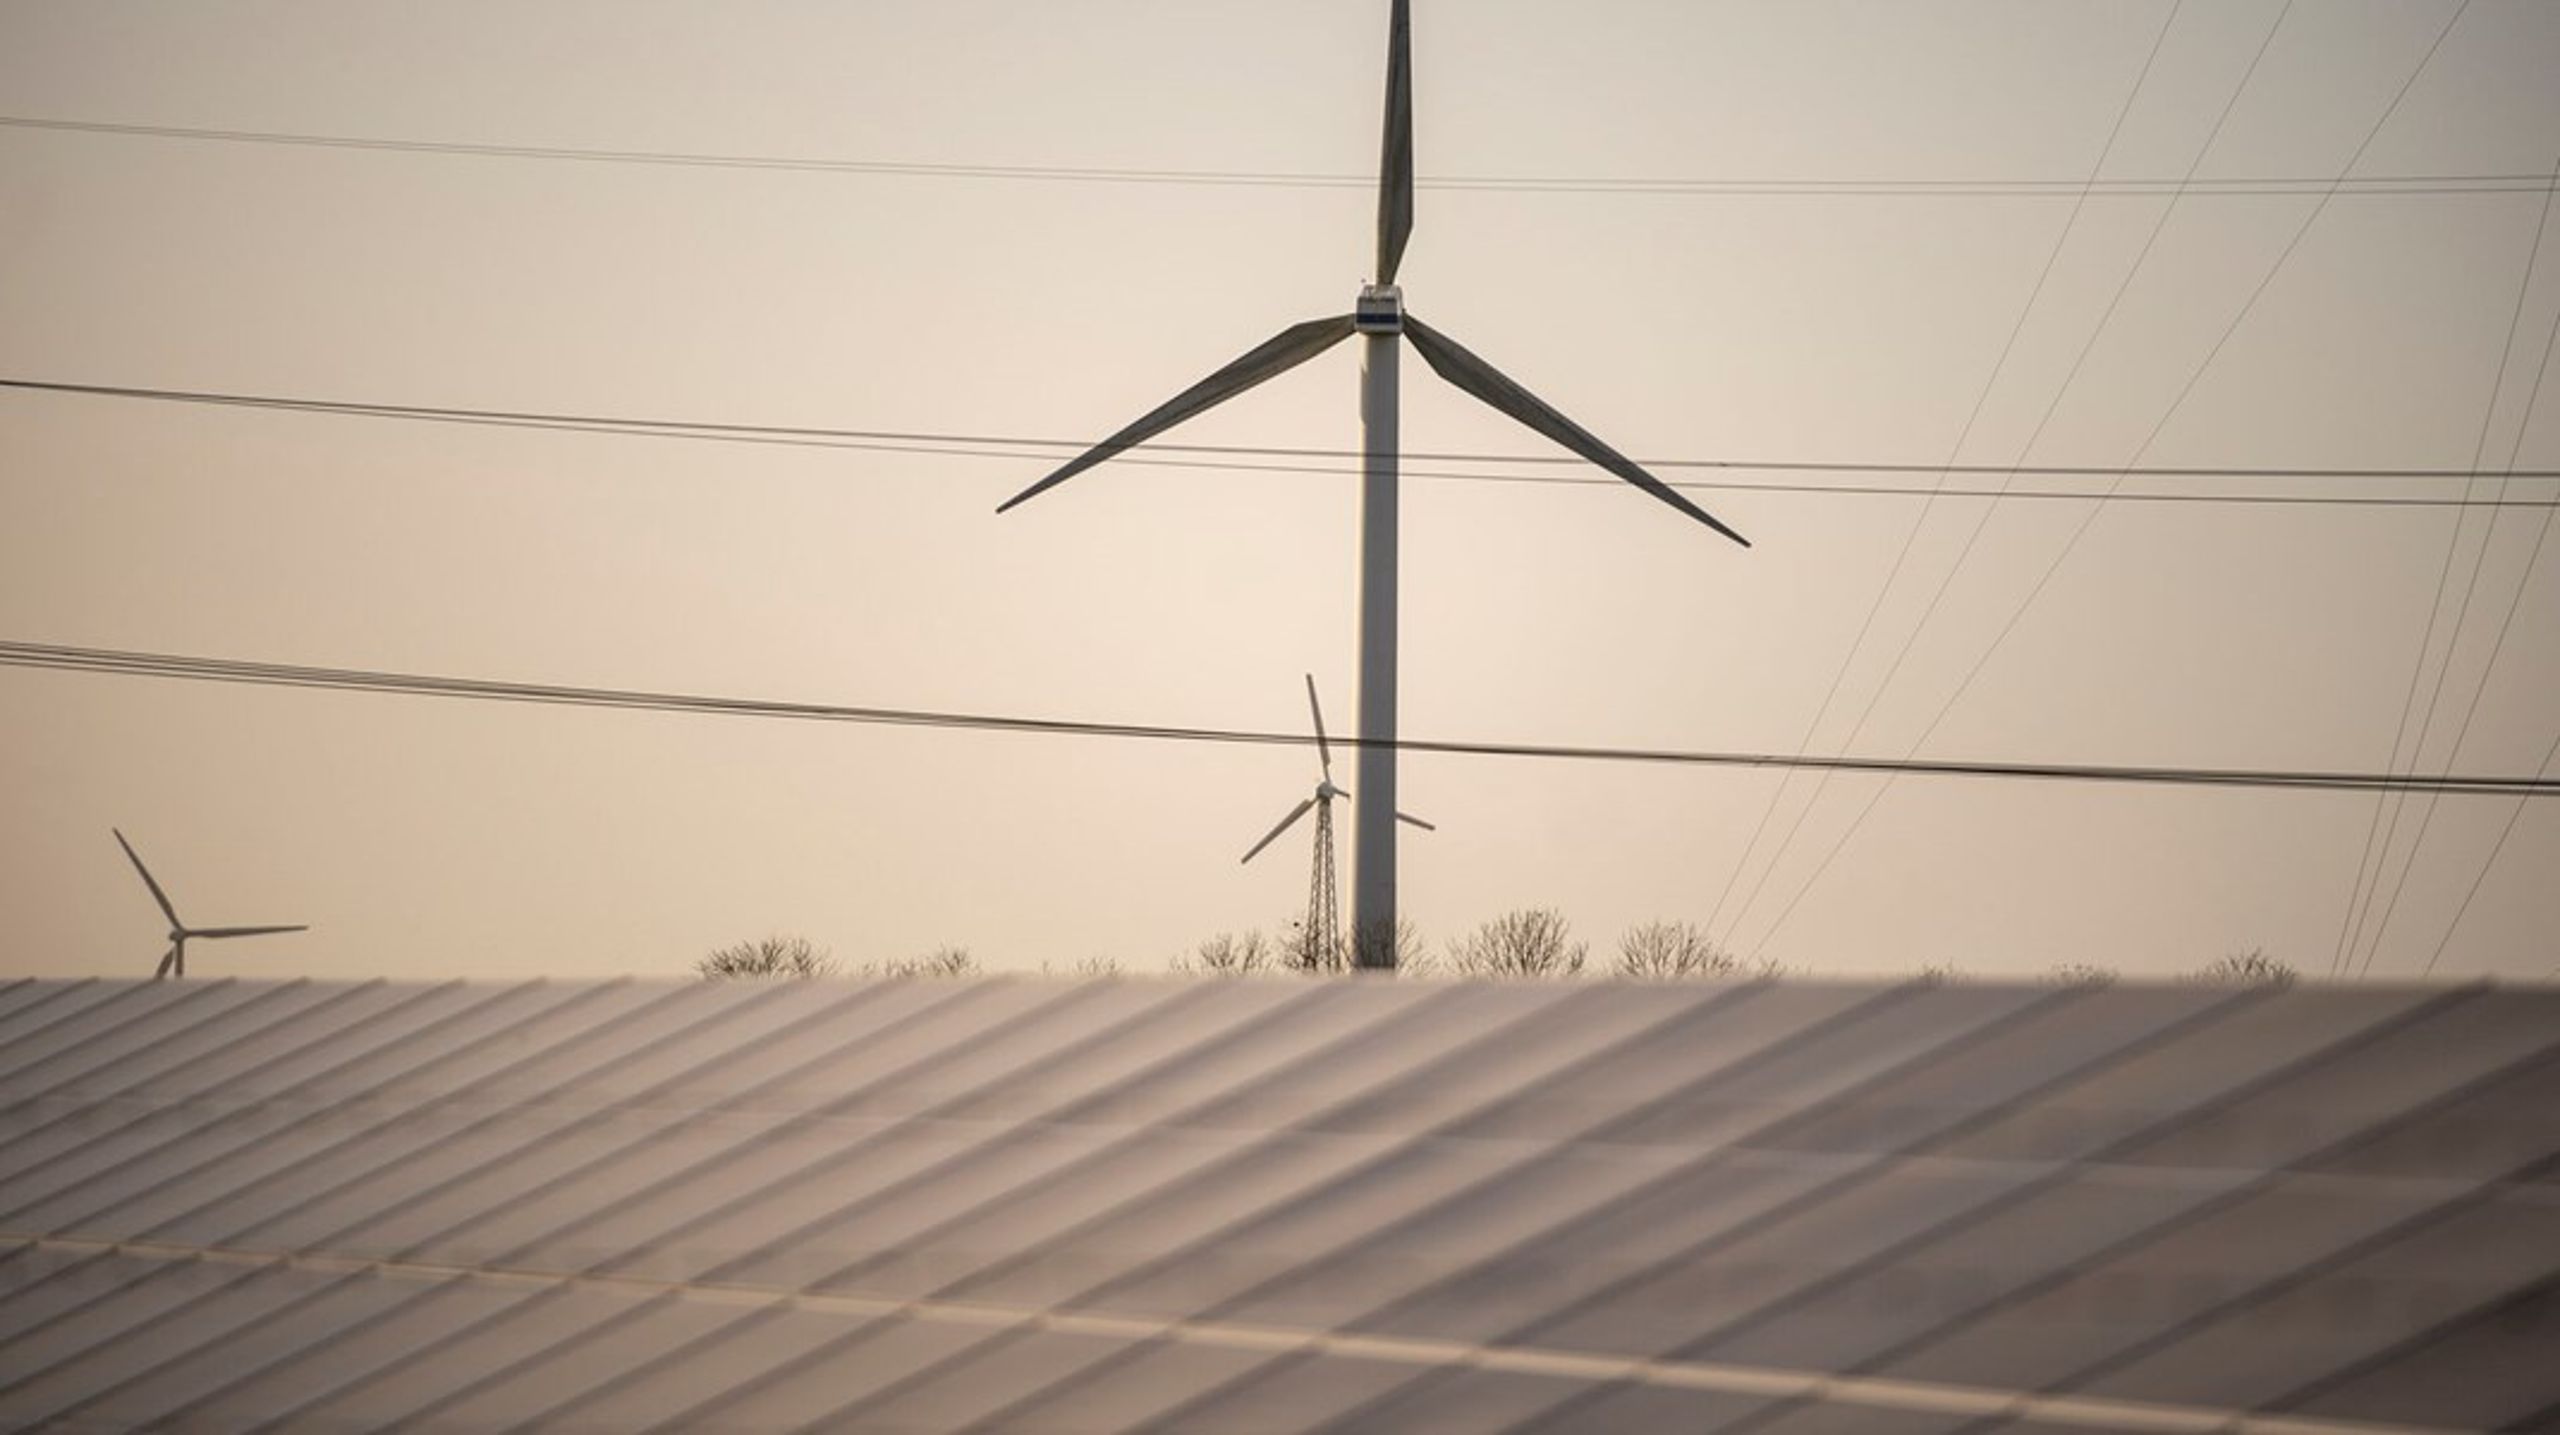 Alene i N1’s netområde vurderer vi, at der er et potentiale for at øge produktionen af grøn strøm med 1,5 gigawatt ved samplacering i eksisterende vedvarende energiparker, skriver Carsten Bryder.